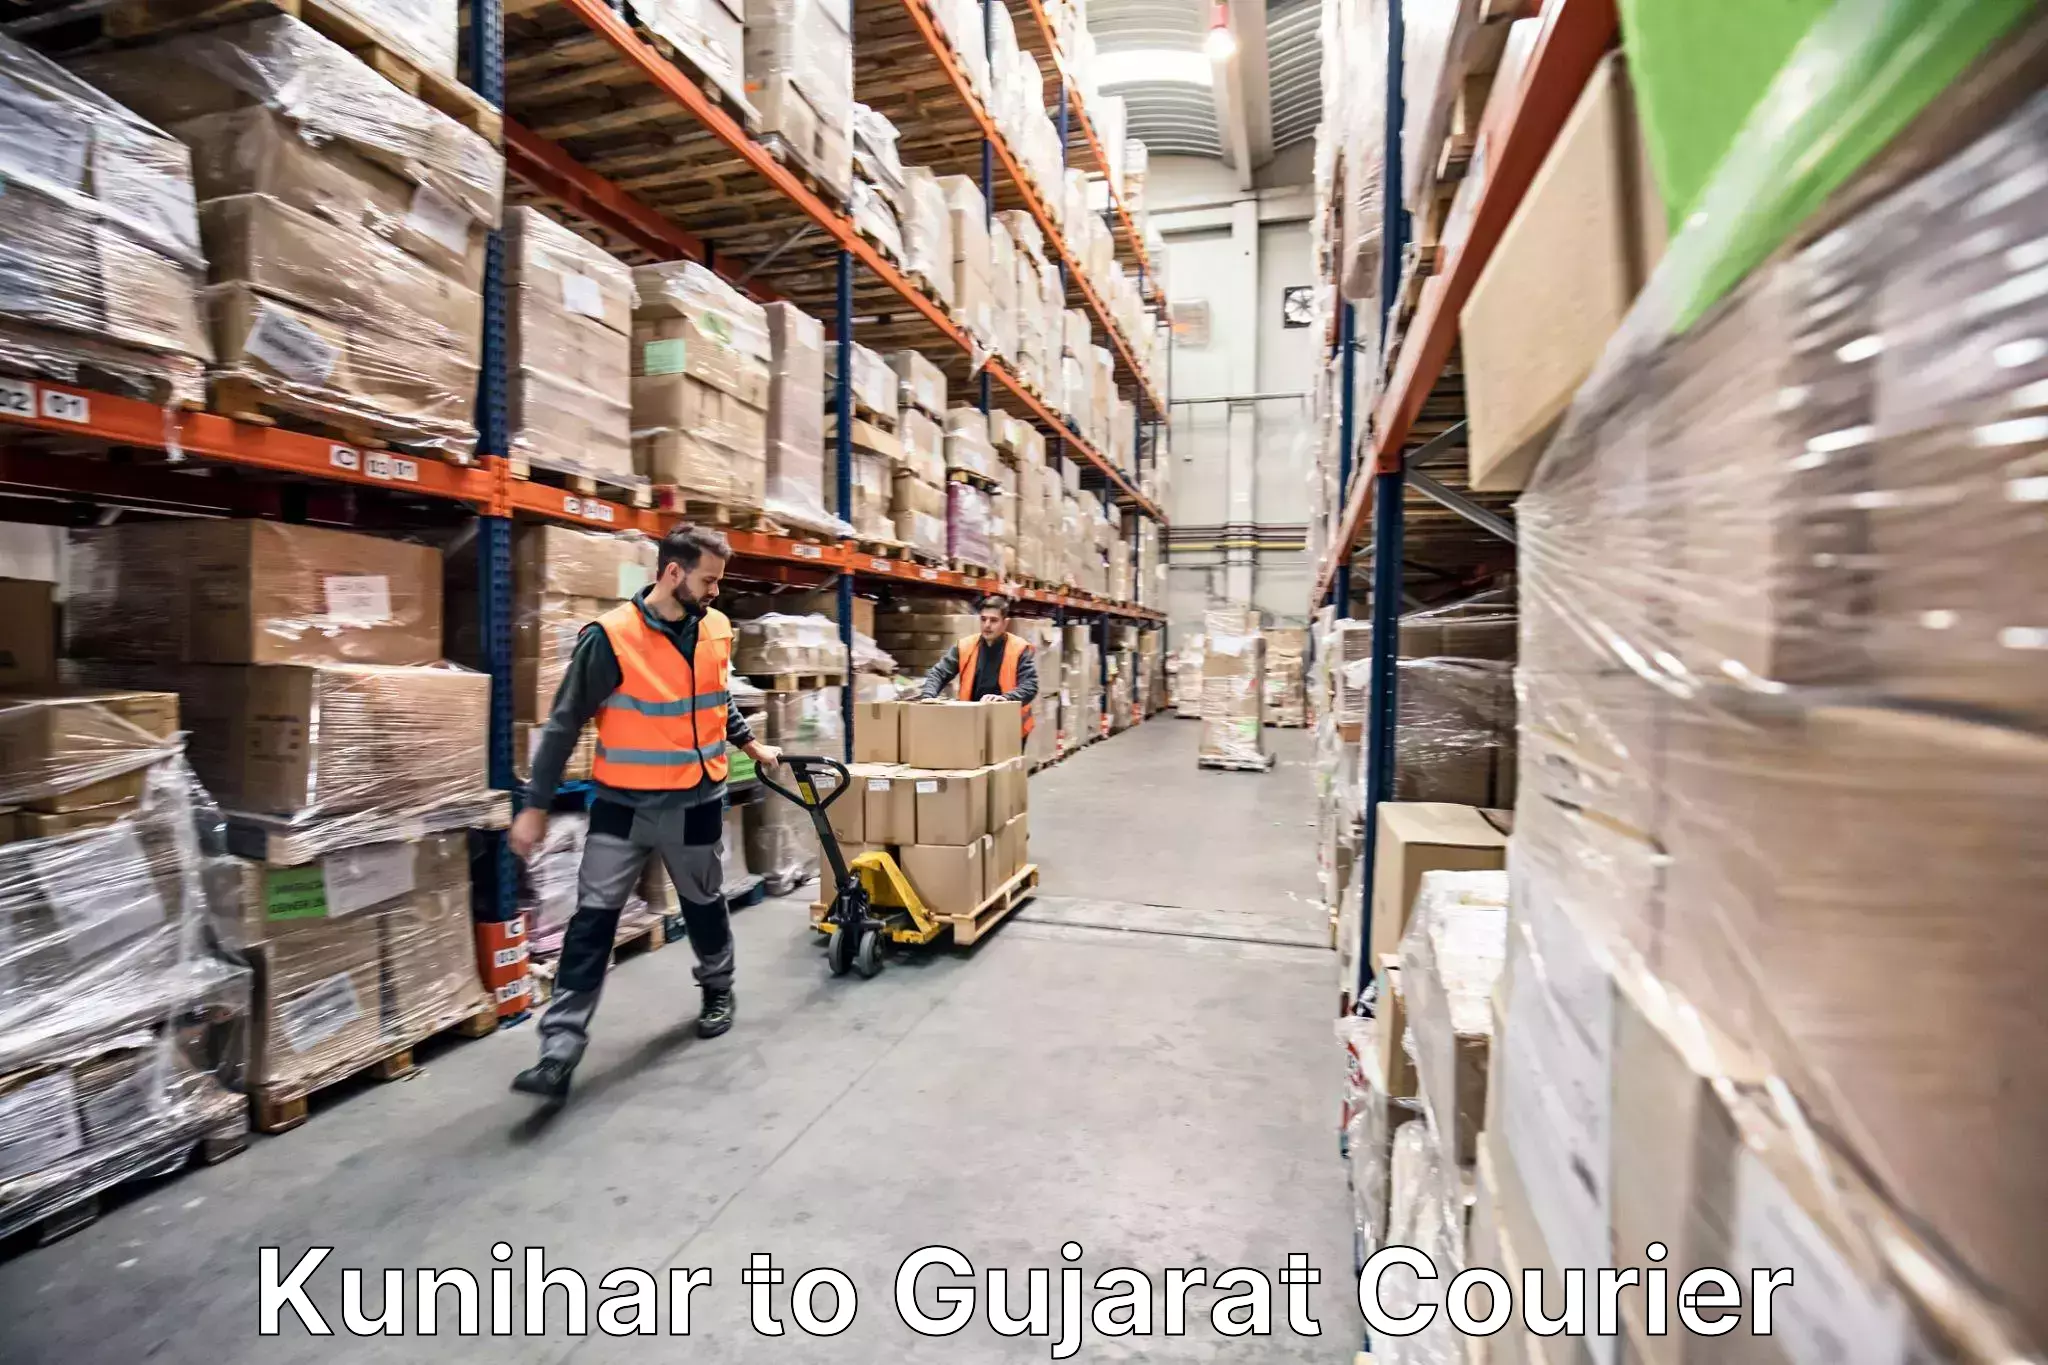 Furniture transport company Kunihar to Vijapur